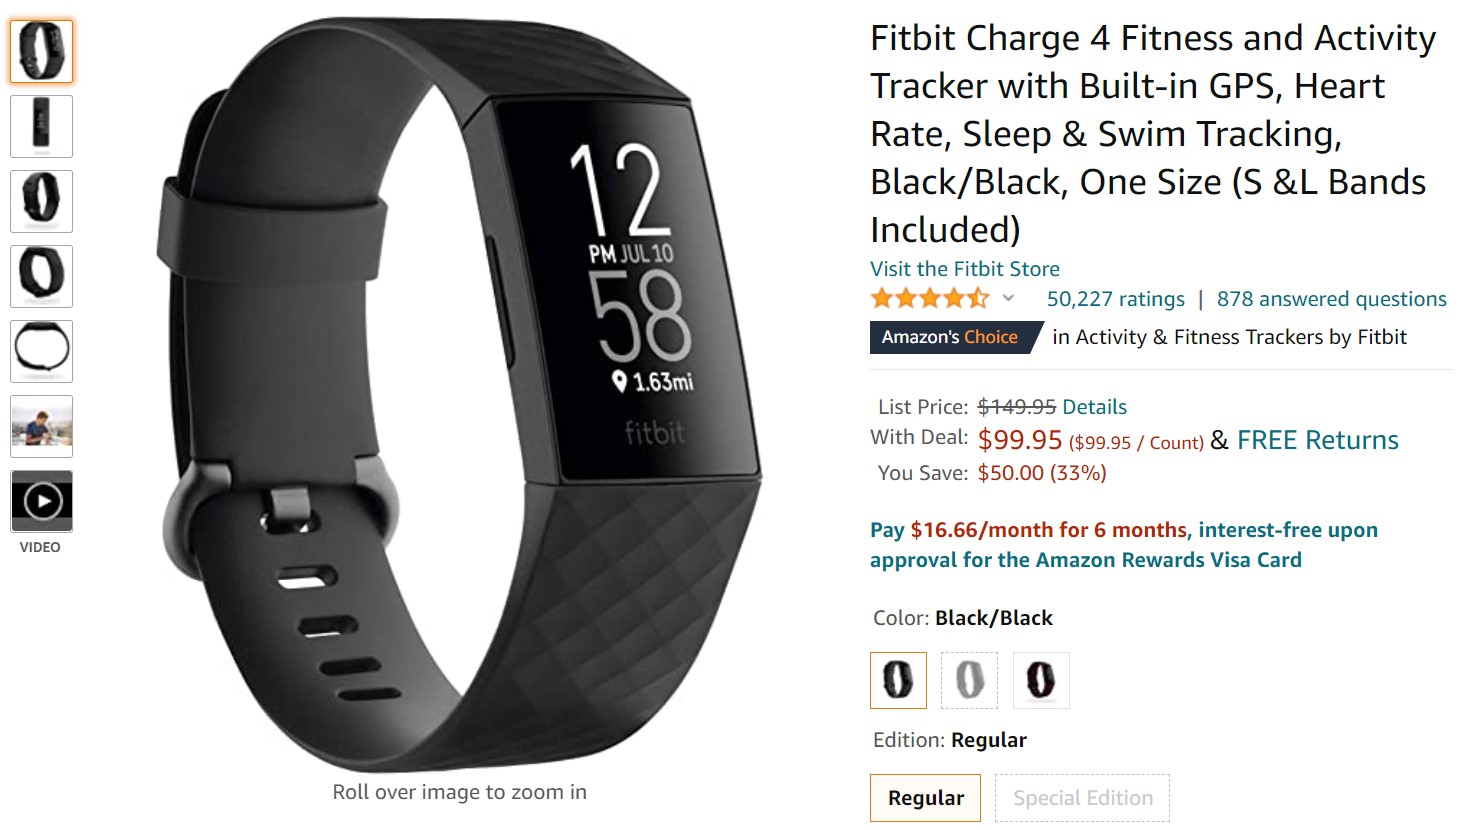 Oferta de Amazon Fitbit Charge 4